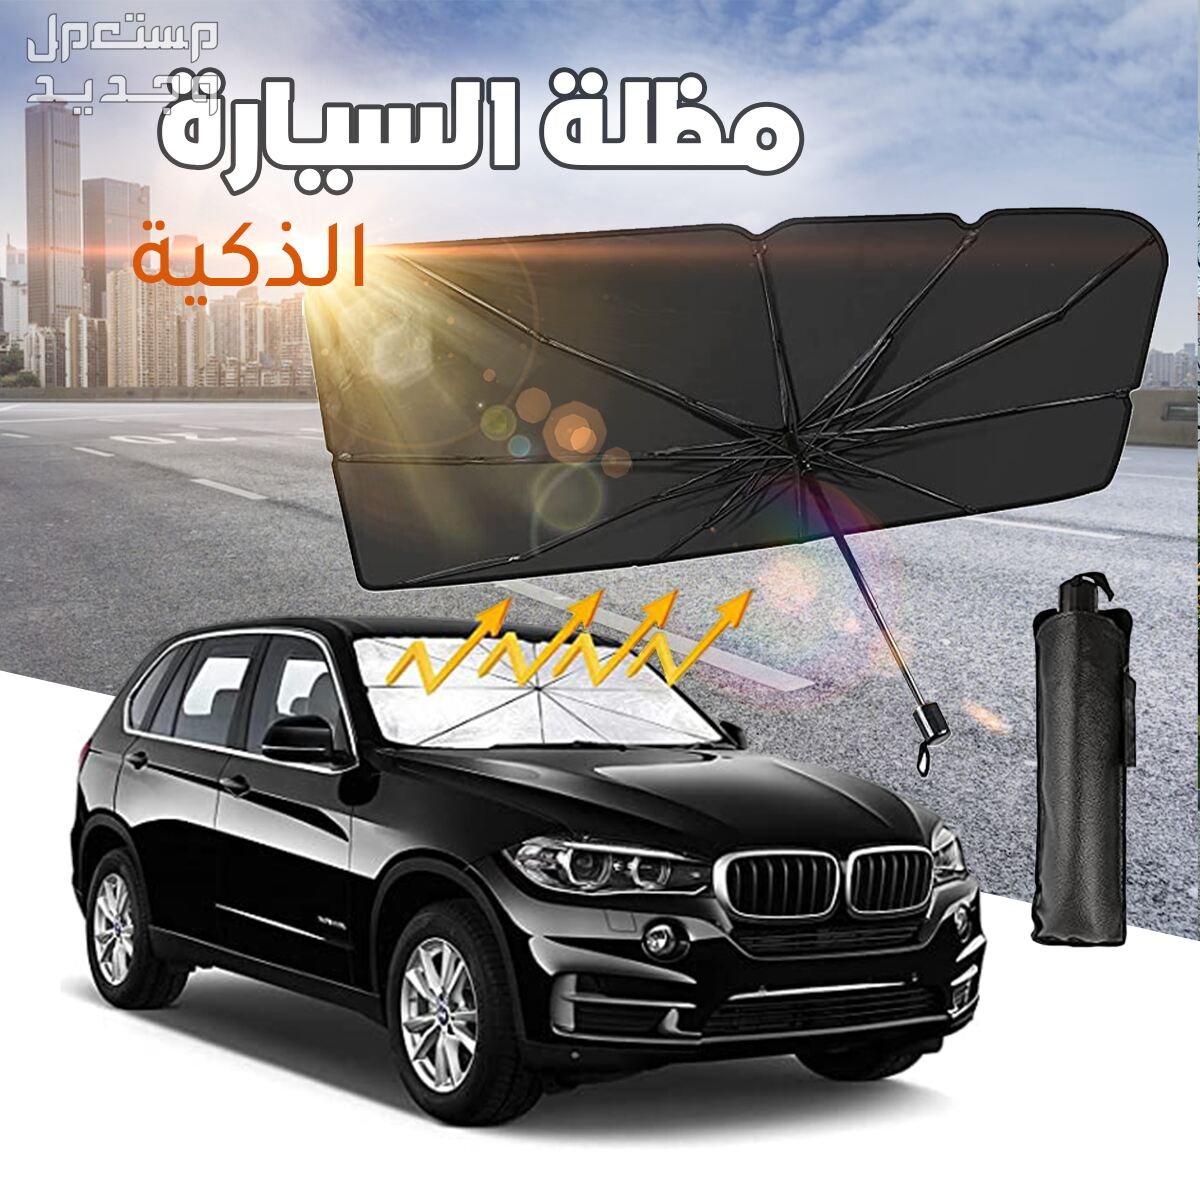 عرض منفاخ وماطور هواء للسيارة مع مظلة السيارة متوفر للطلب لكل المدن والتوصيل والشحن مجانا